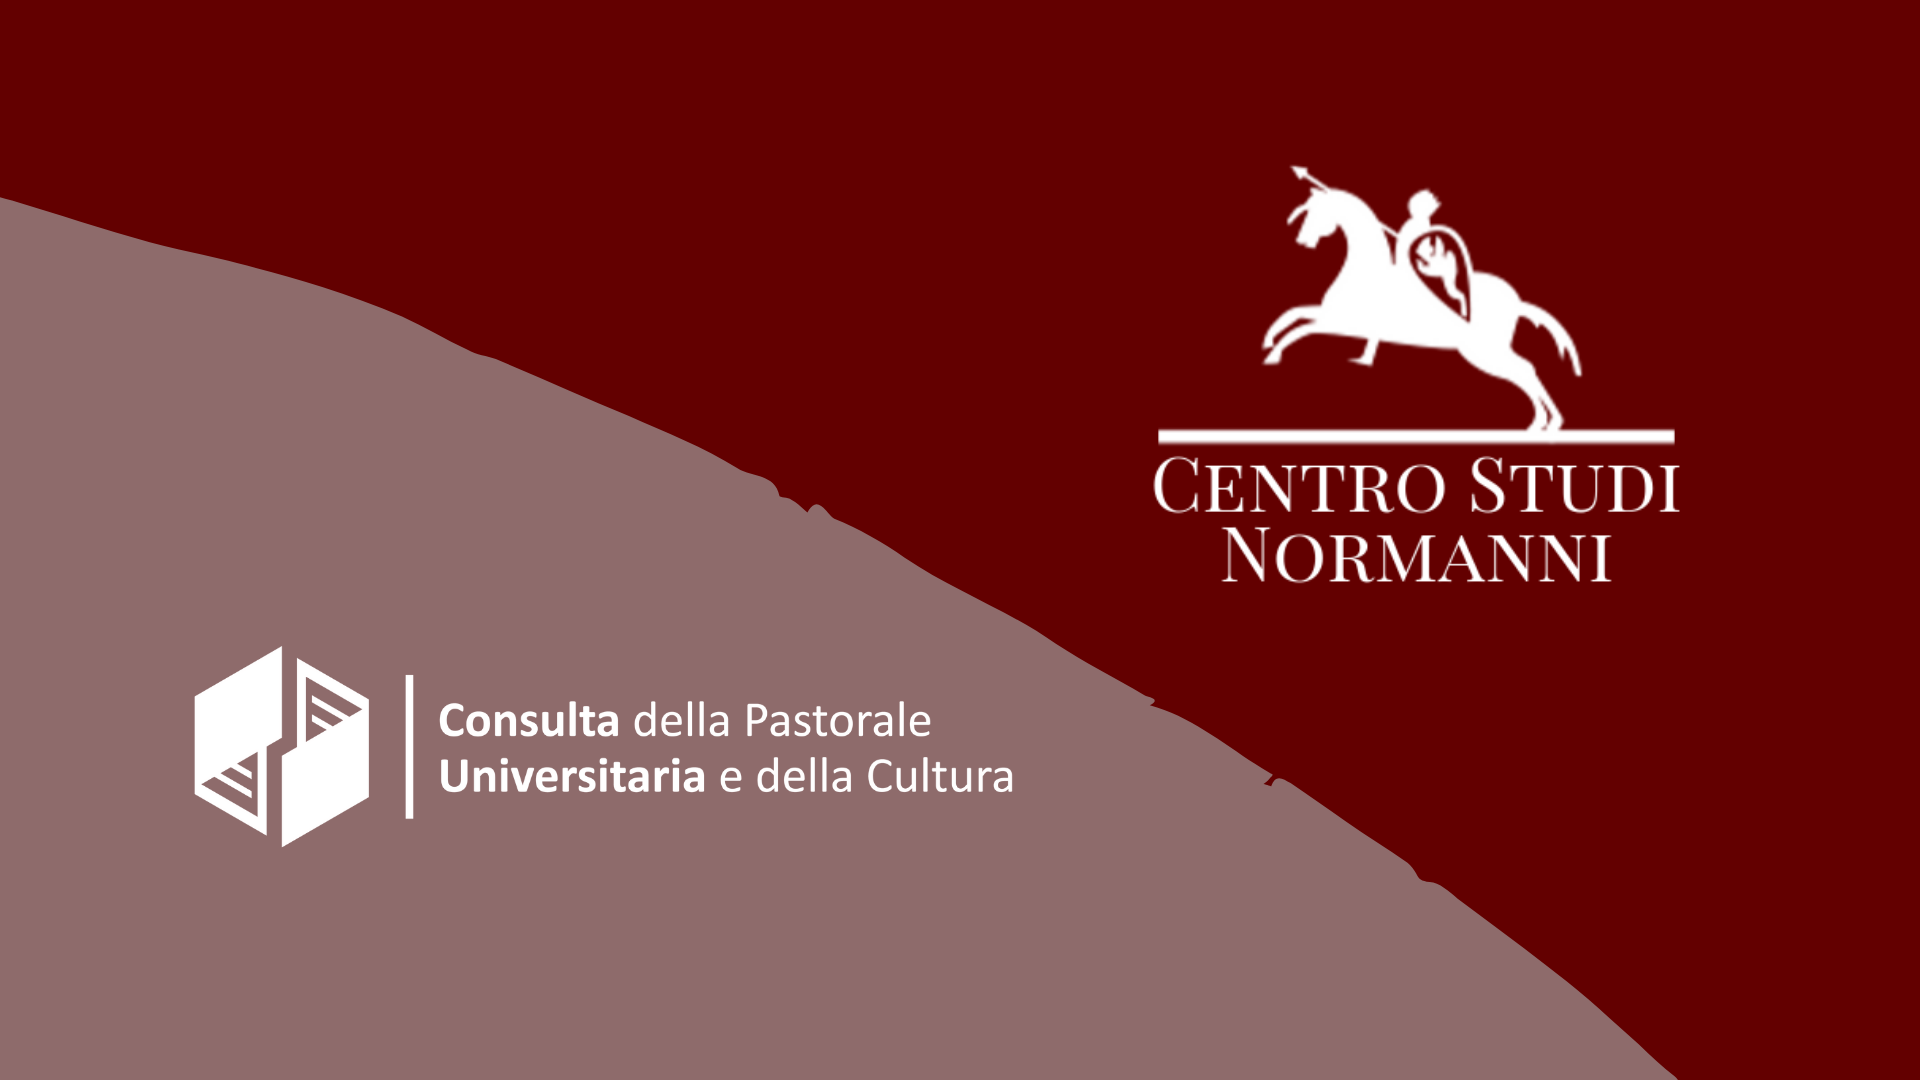 Firmato il protocollo d’intesa tra Centro Studi Normanni e Consulta della Pastorale Universitaria